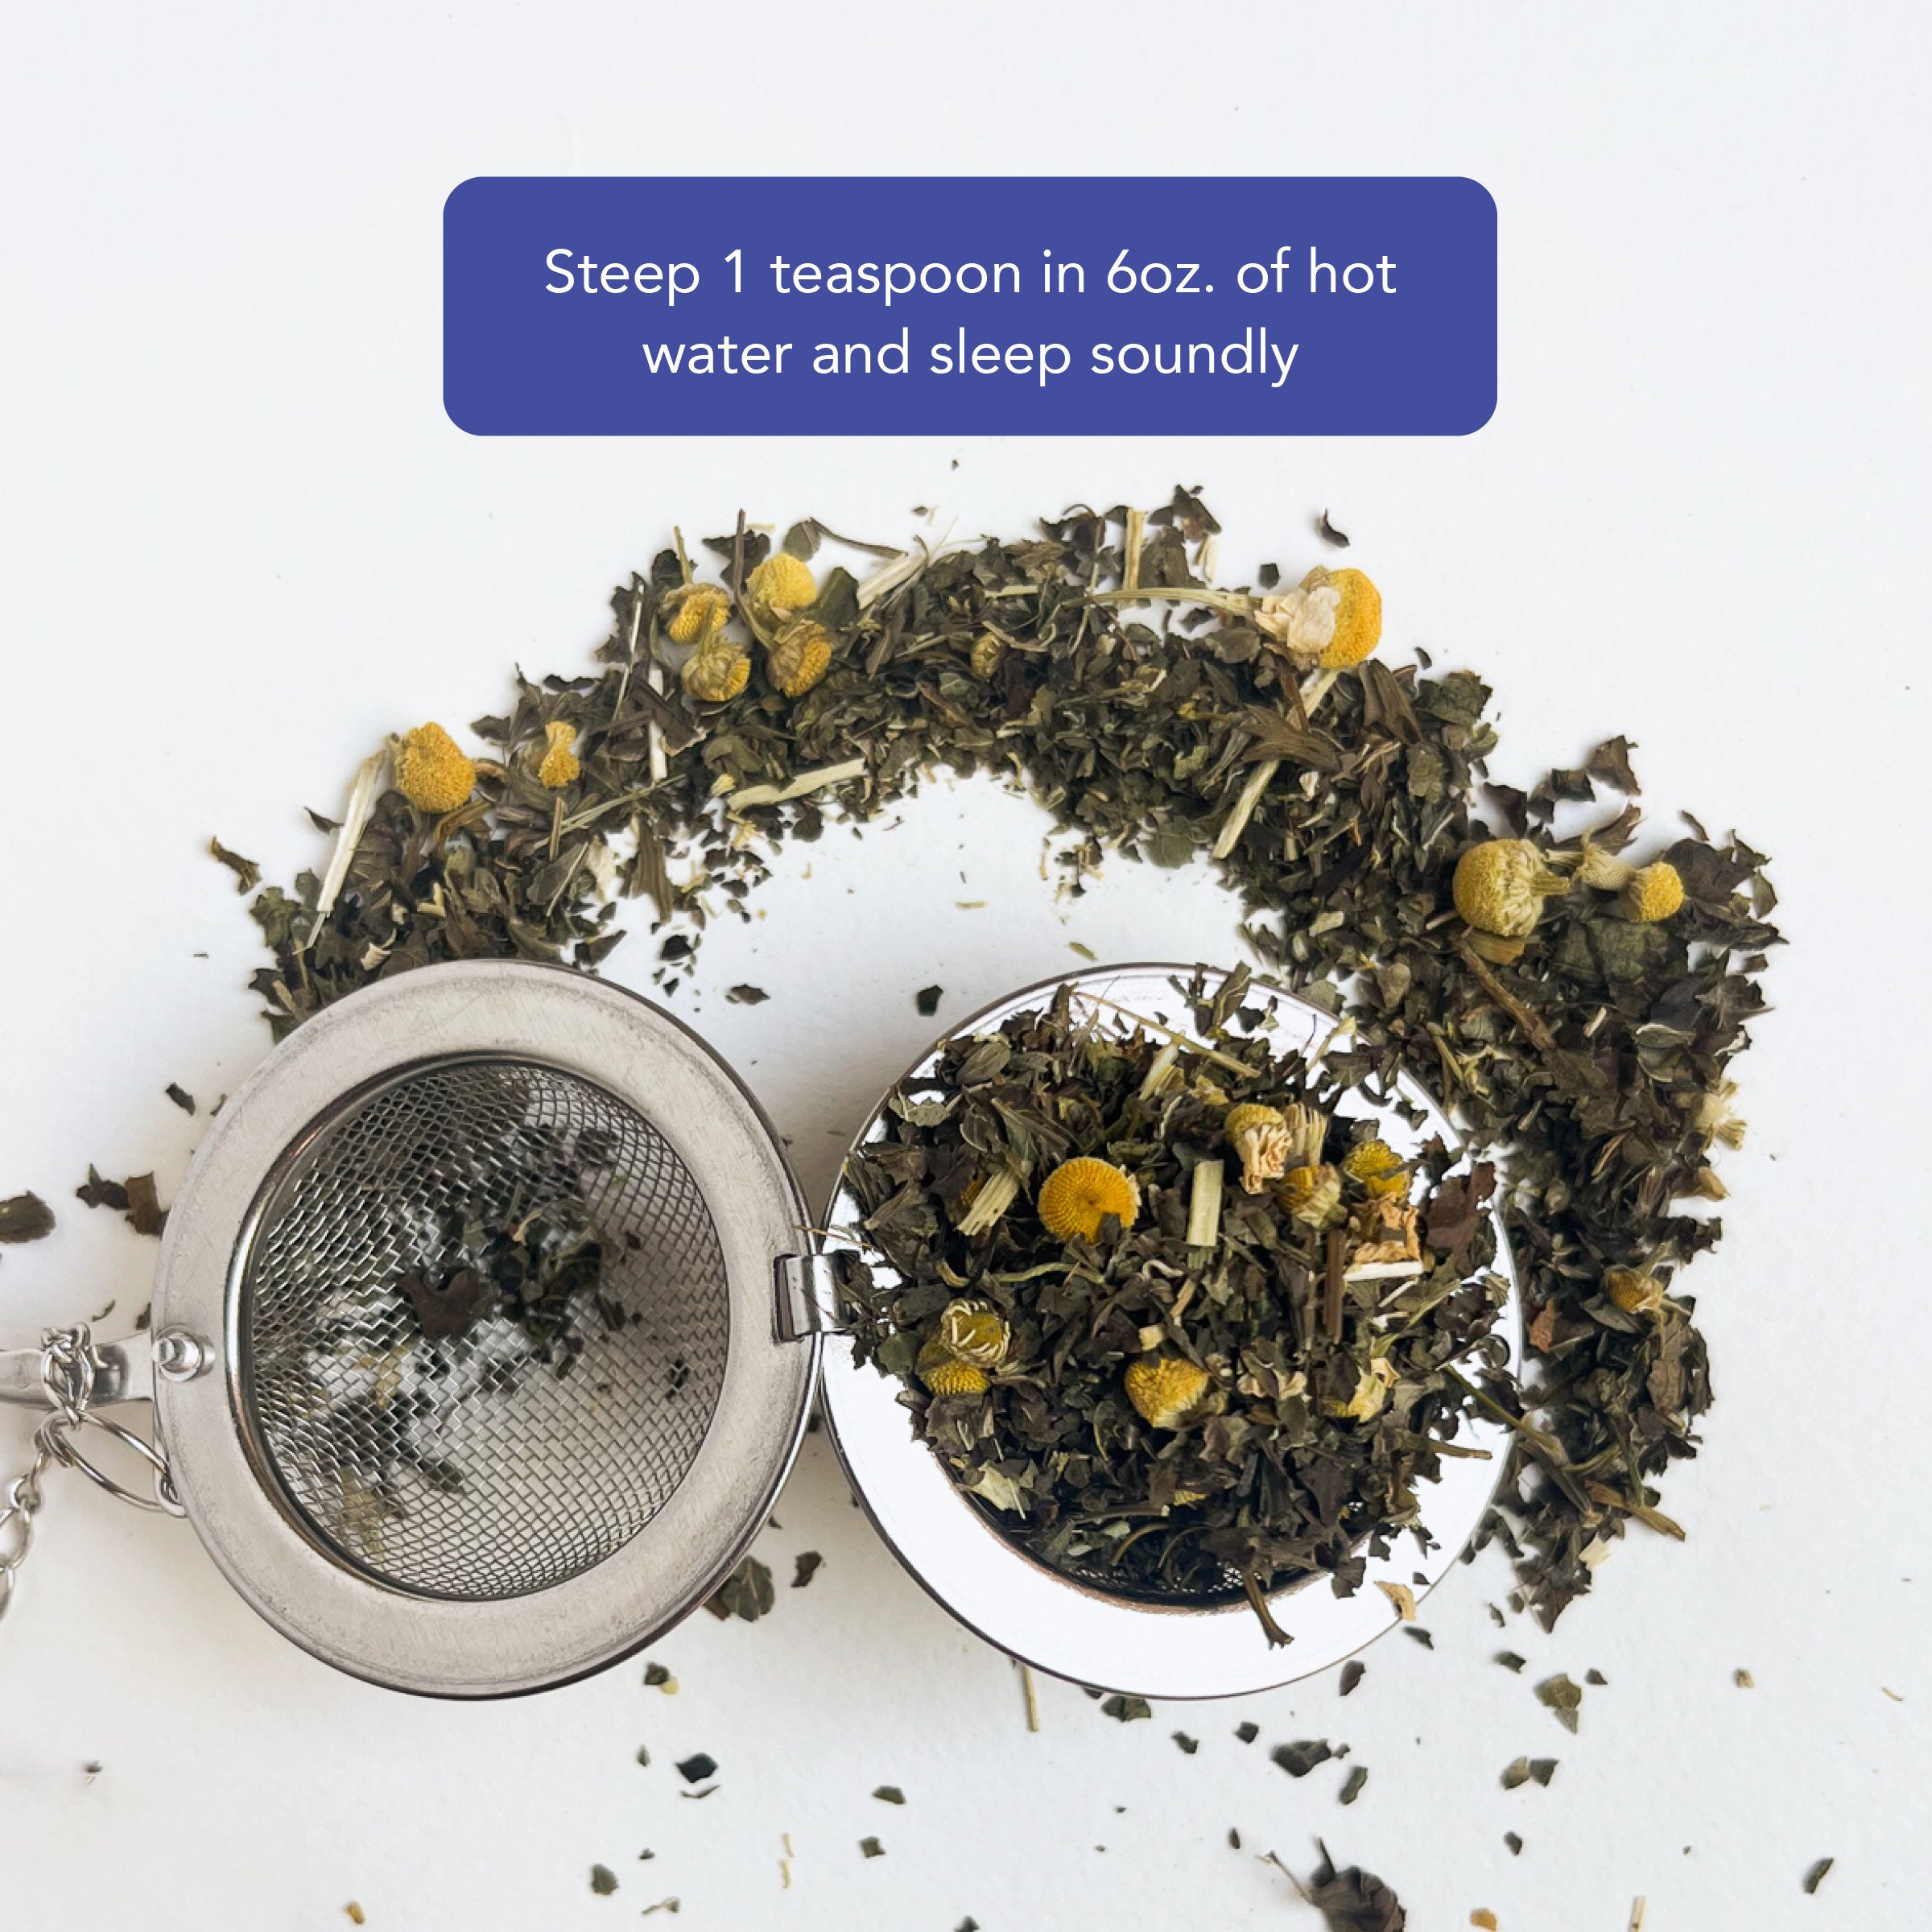 Sleep &amp; Restore Tea Blend - Loose Leaf Tea